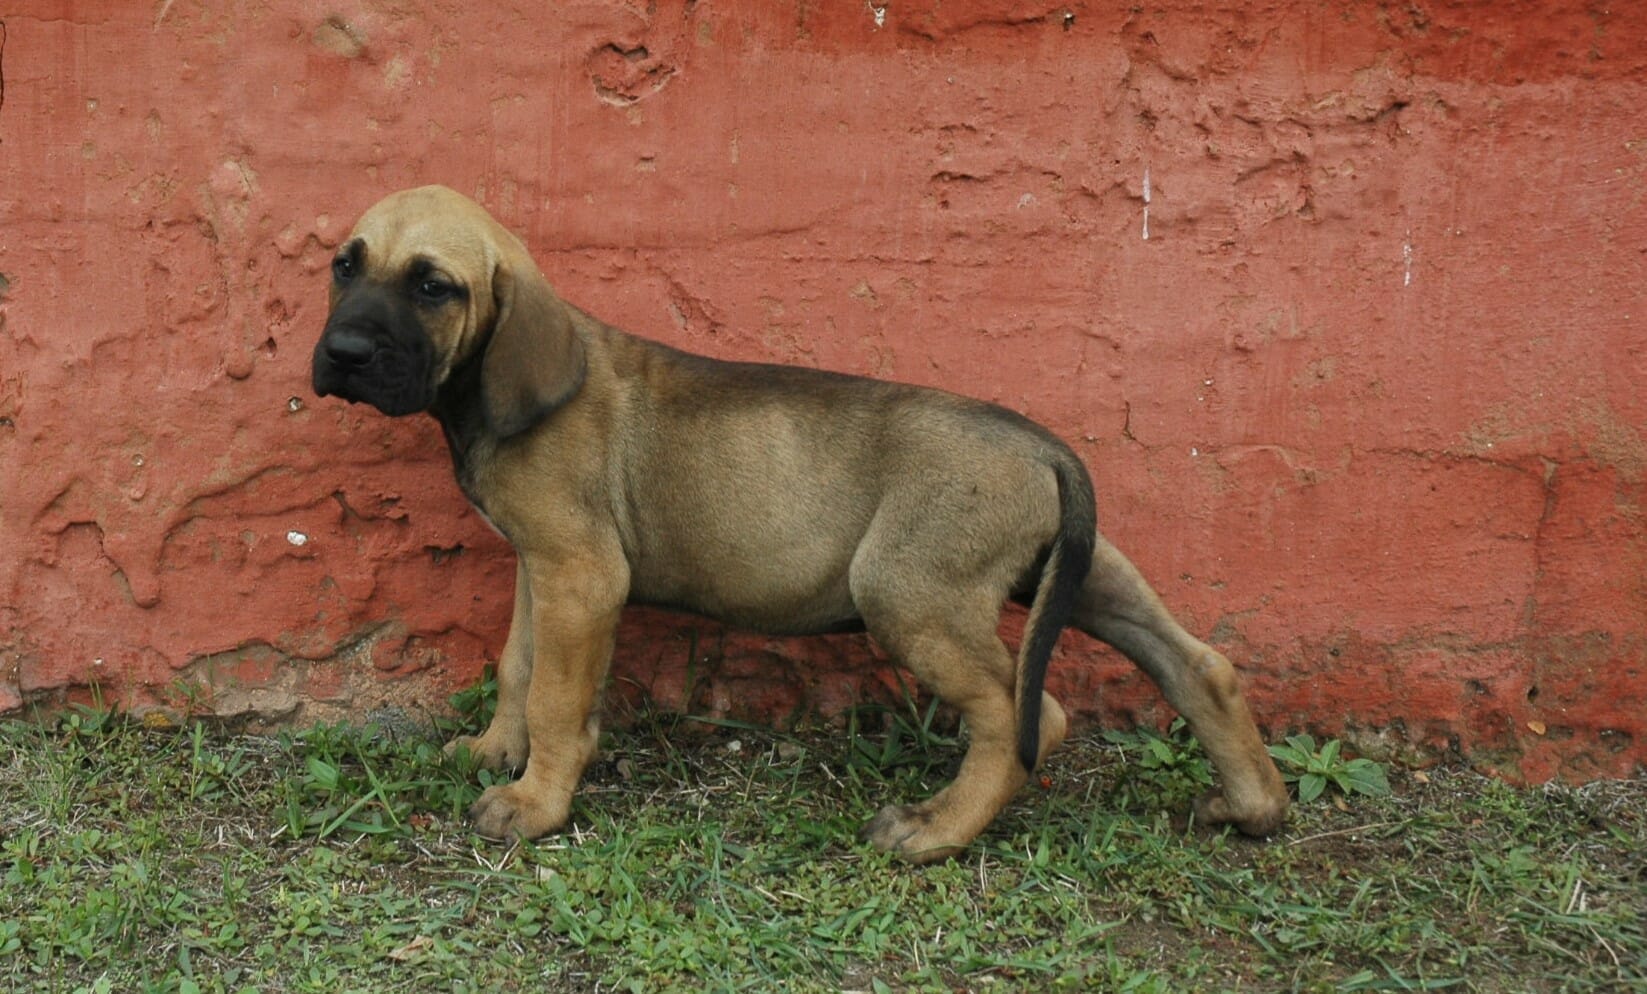 Rio, Purebred, healthy Fila Brasileiro puppy for sale